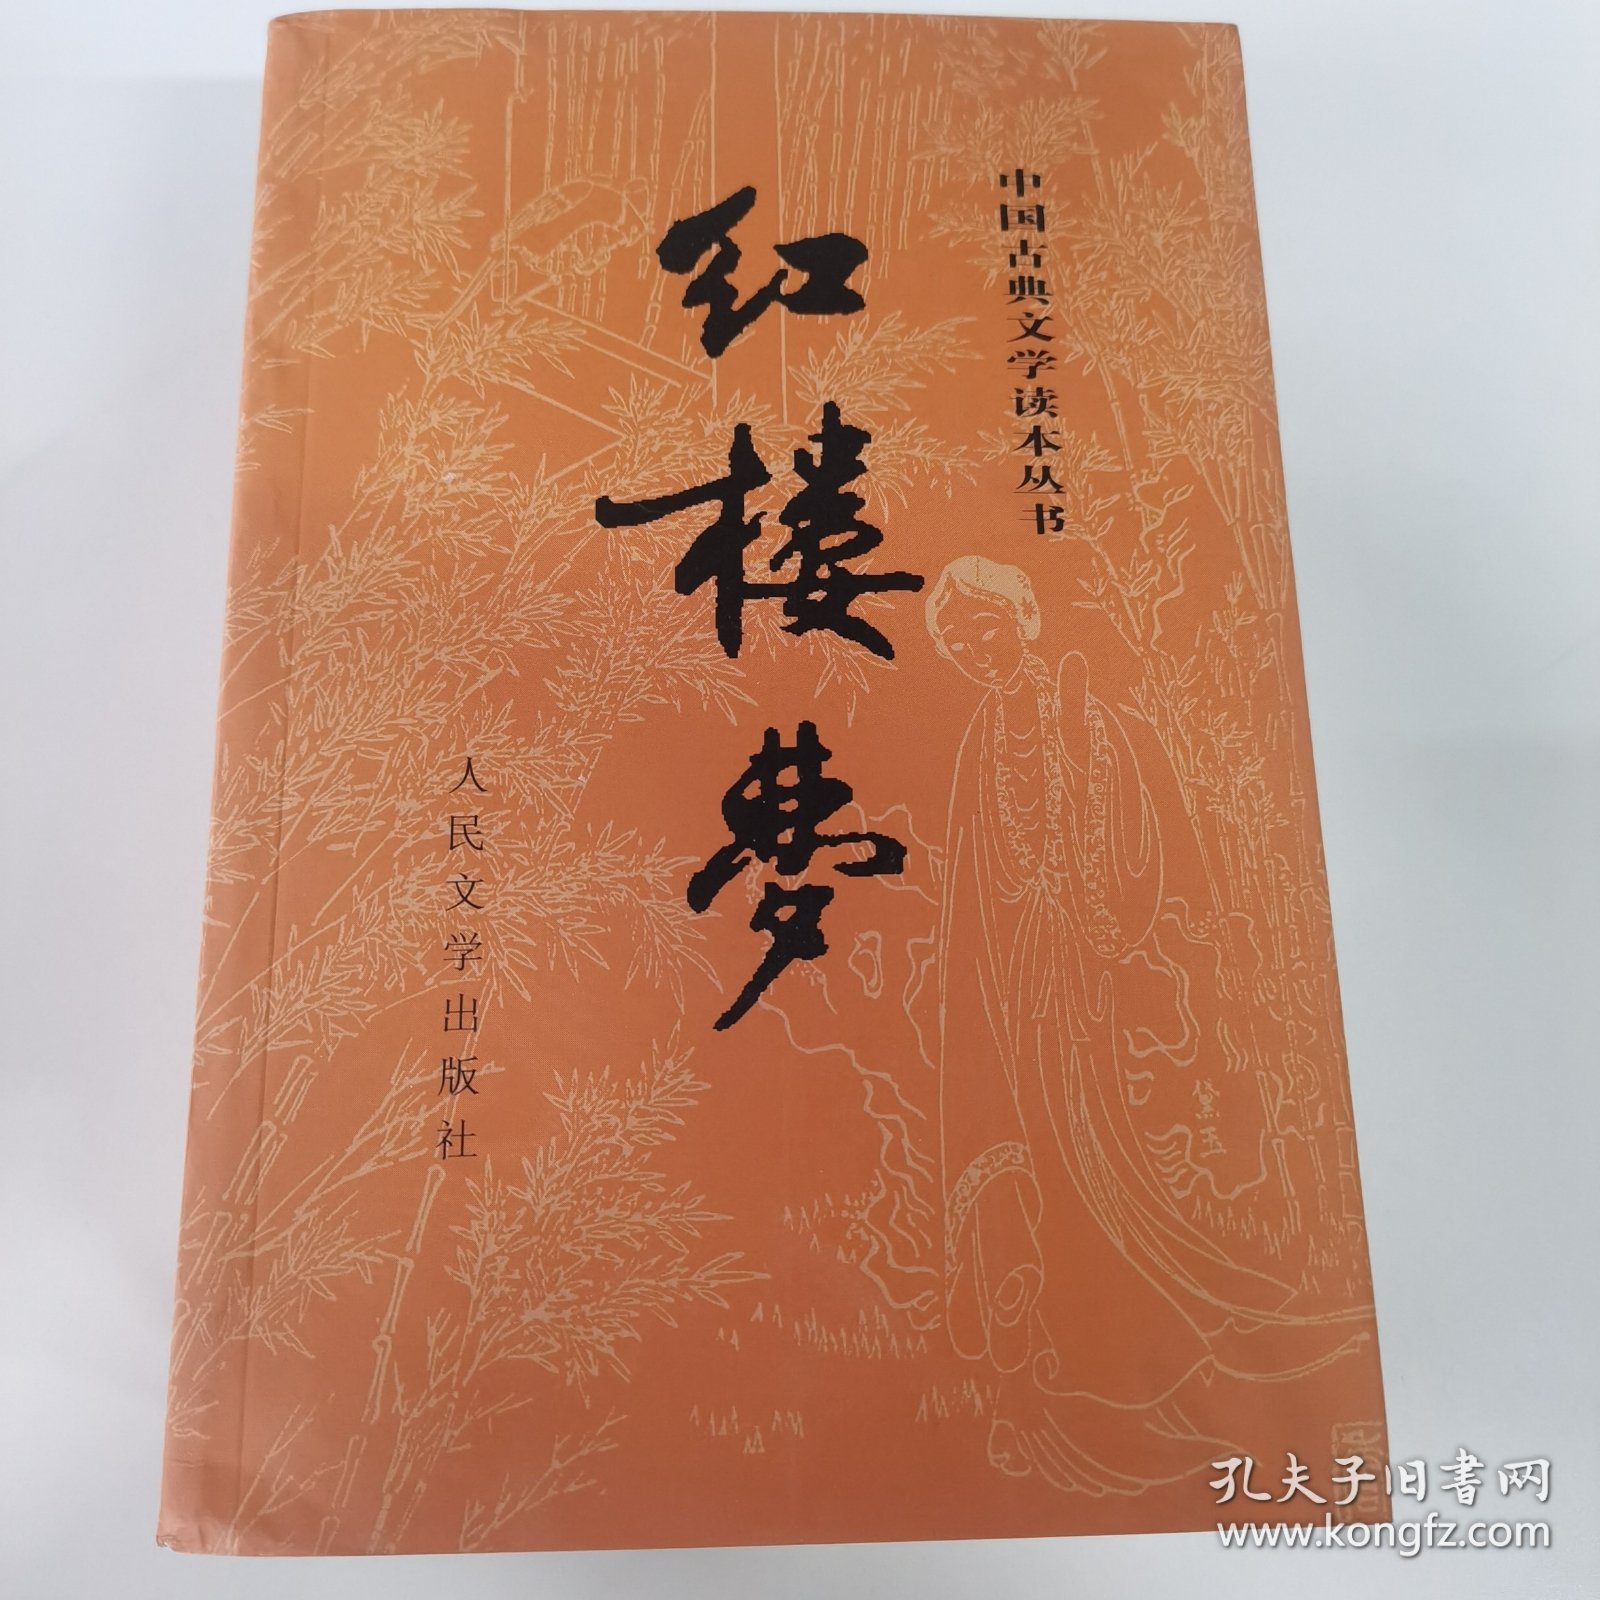 中国古典文学读书本丛书-红楼梦上下